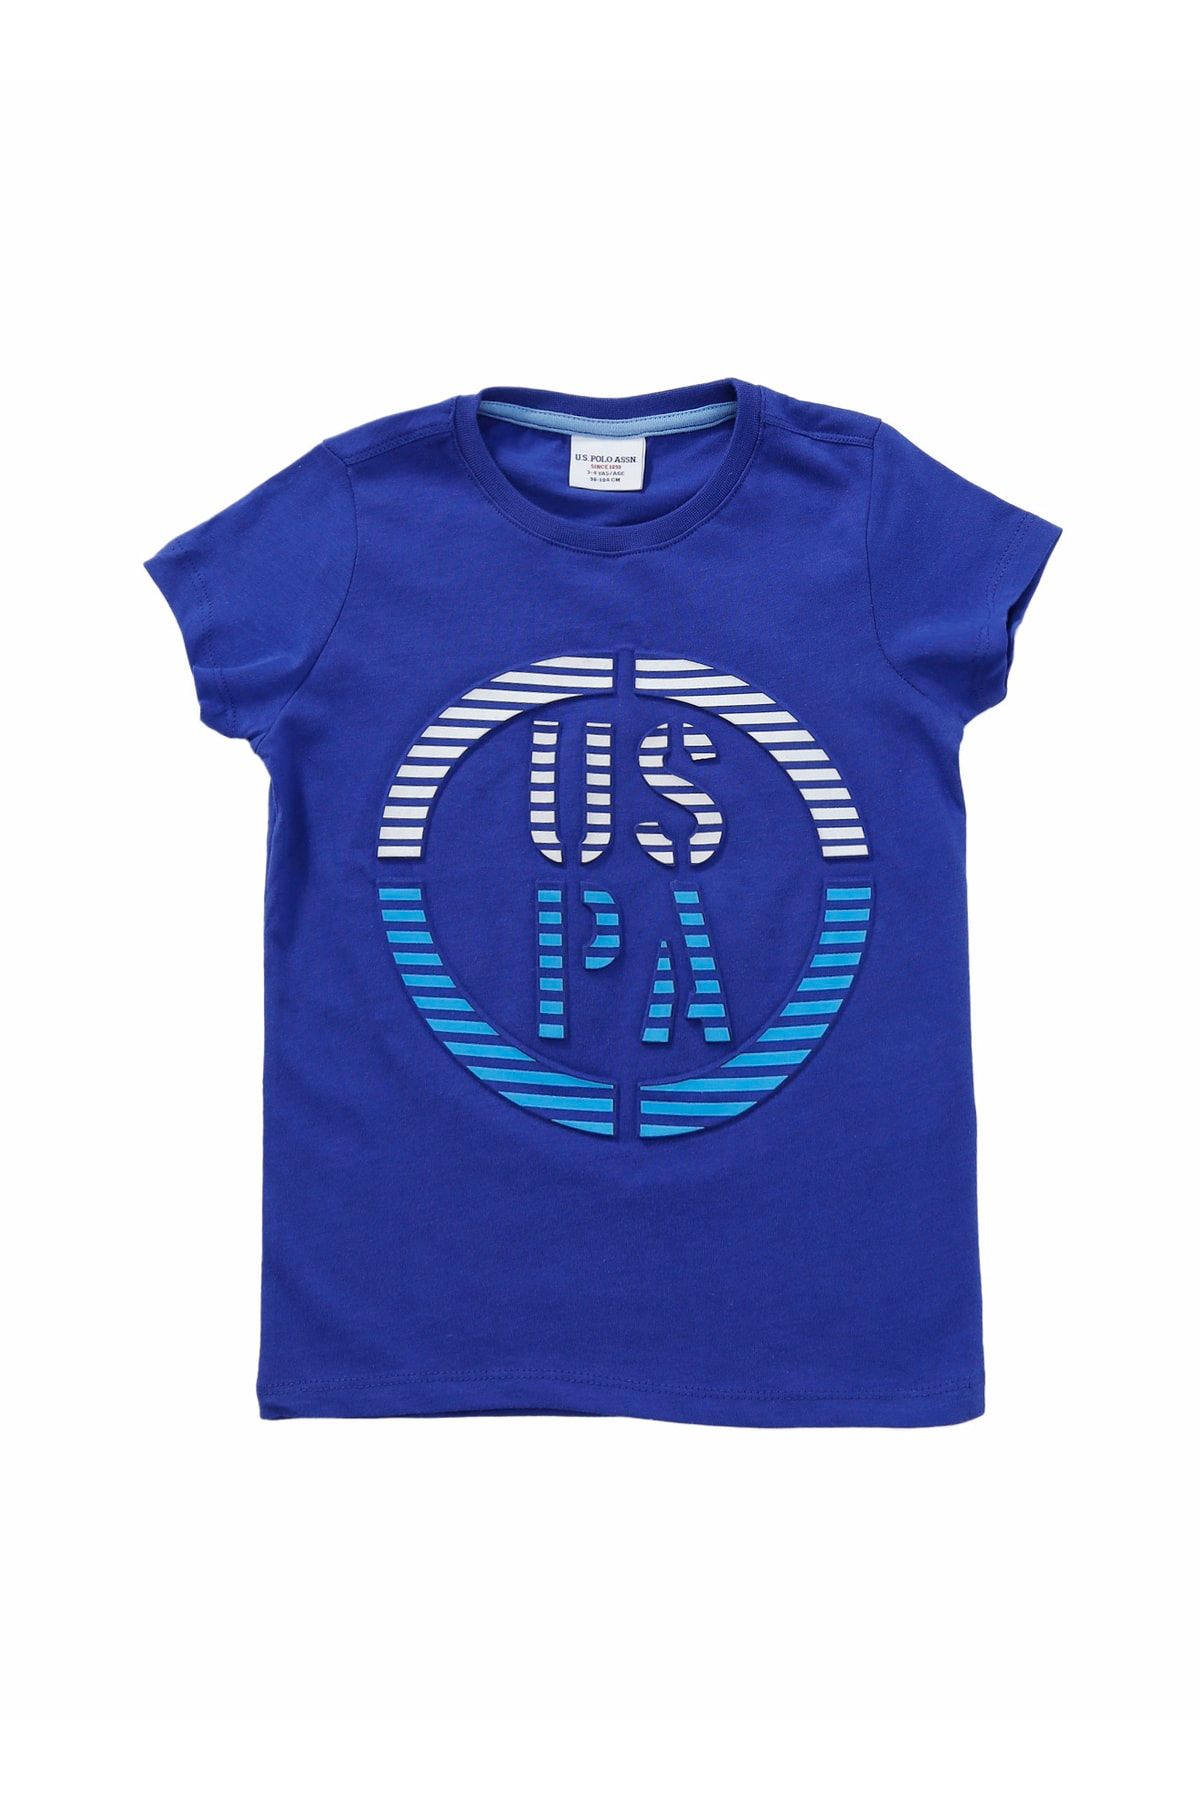 U.S. Polo Assn. T-shirt, 11-12 Yaş, Mavi